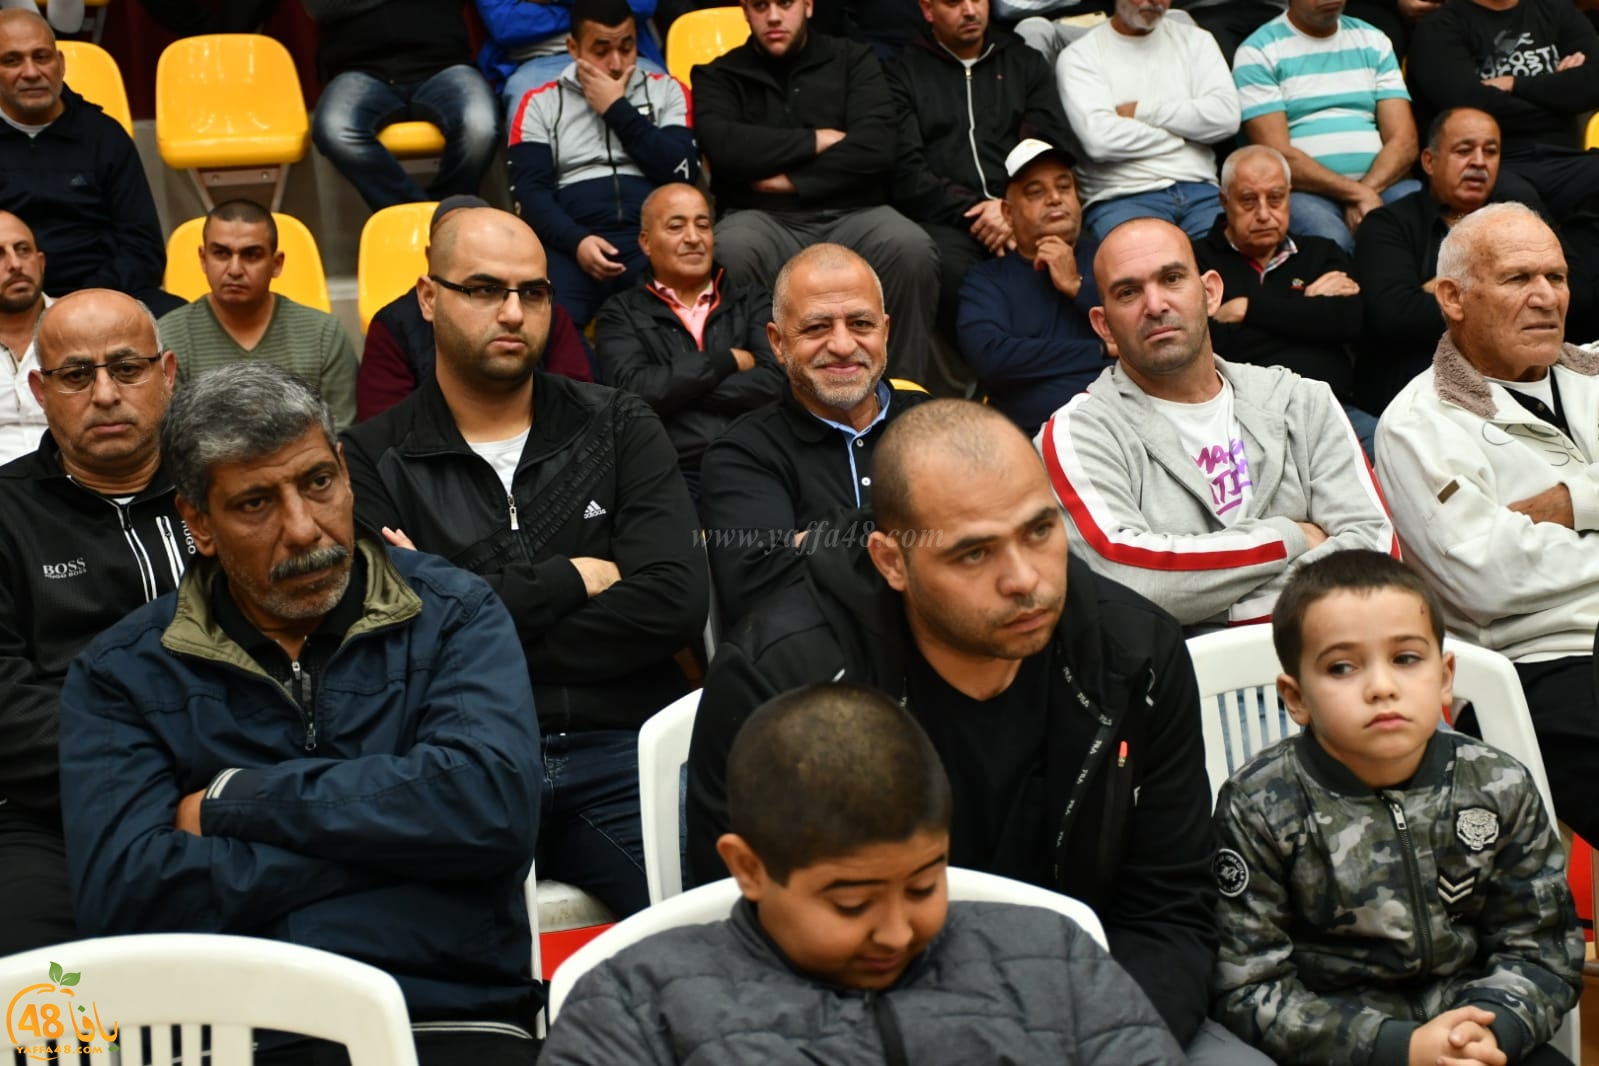 بعد النجاح الكبير في قضيتهم - حضور غفير في احتفال الصيادين بمدينة يافا 